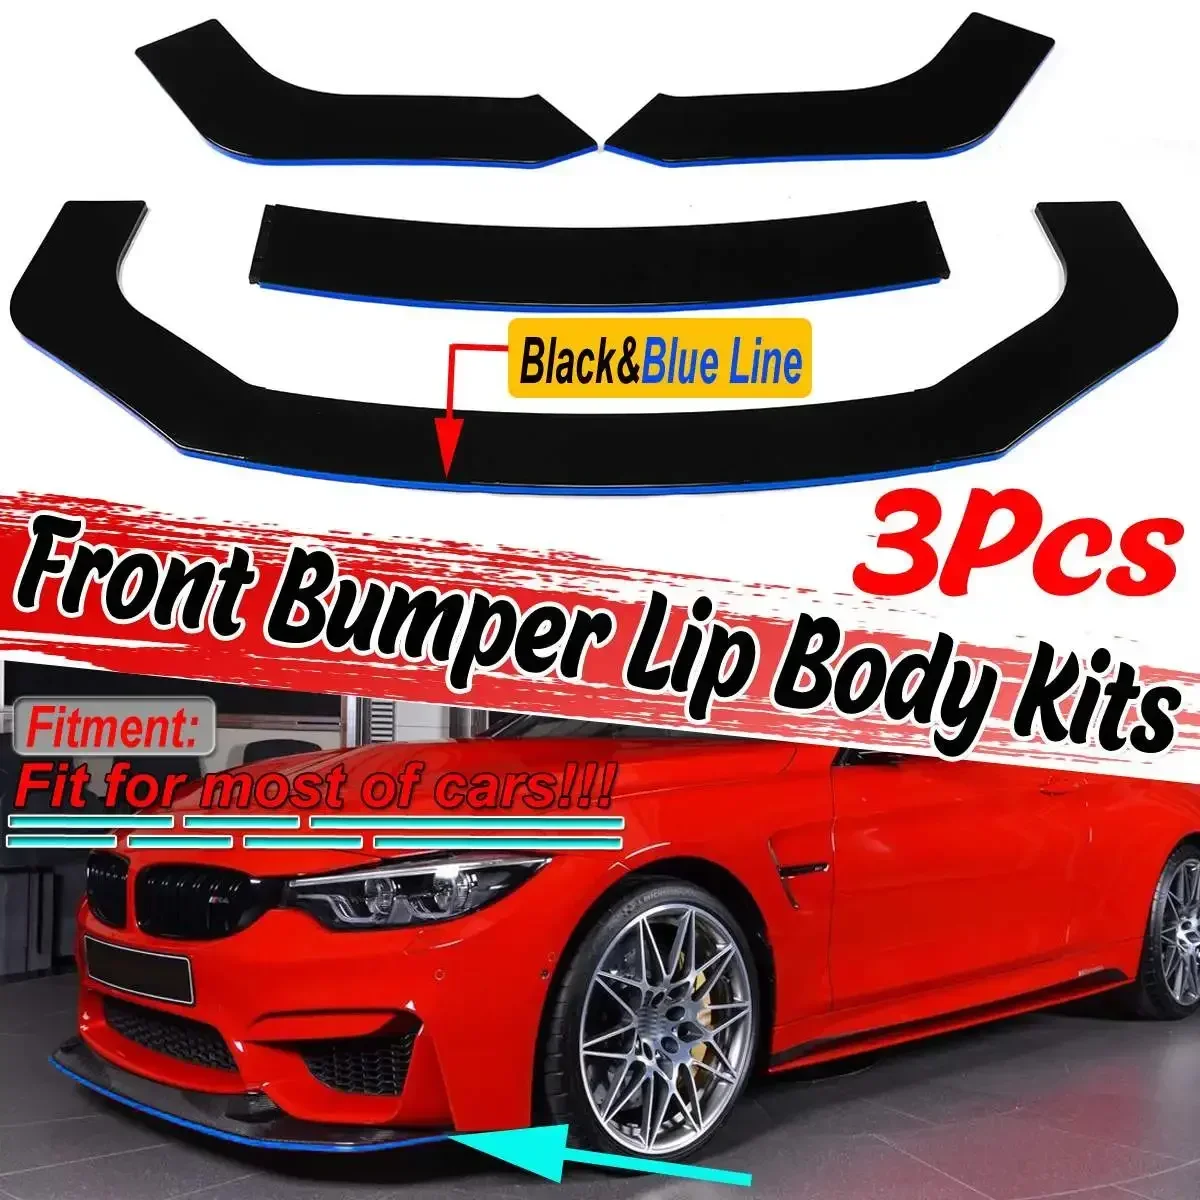 

3pcs Universal Car Front Bumper Splitter Lip Diffuser Protector For BMW F10/F11 E39 E46 E90 E92 E93 E60 F32 F36 G30 G31 Body Kit